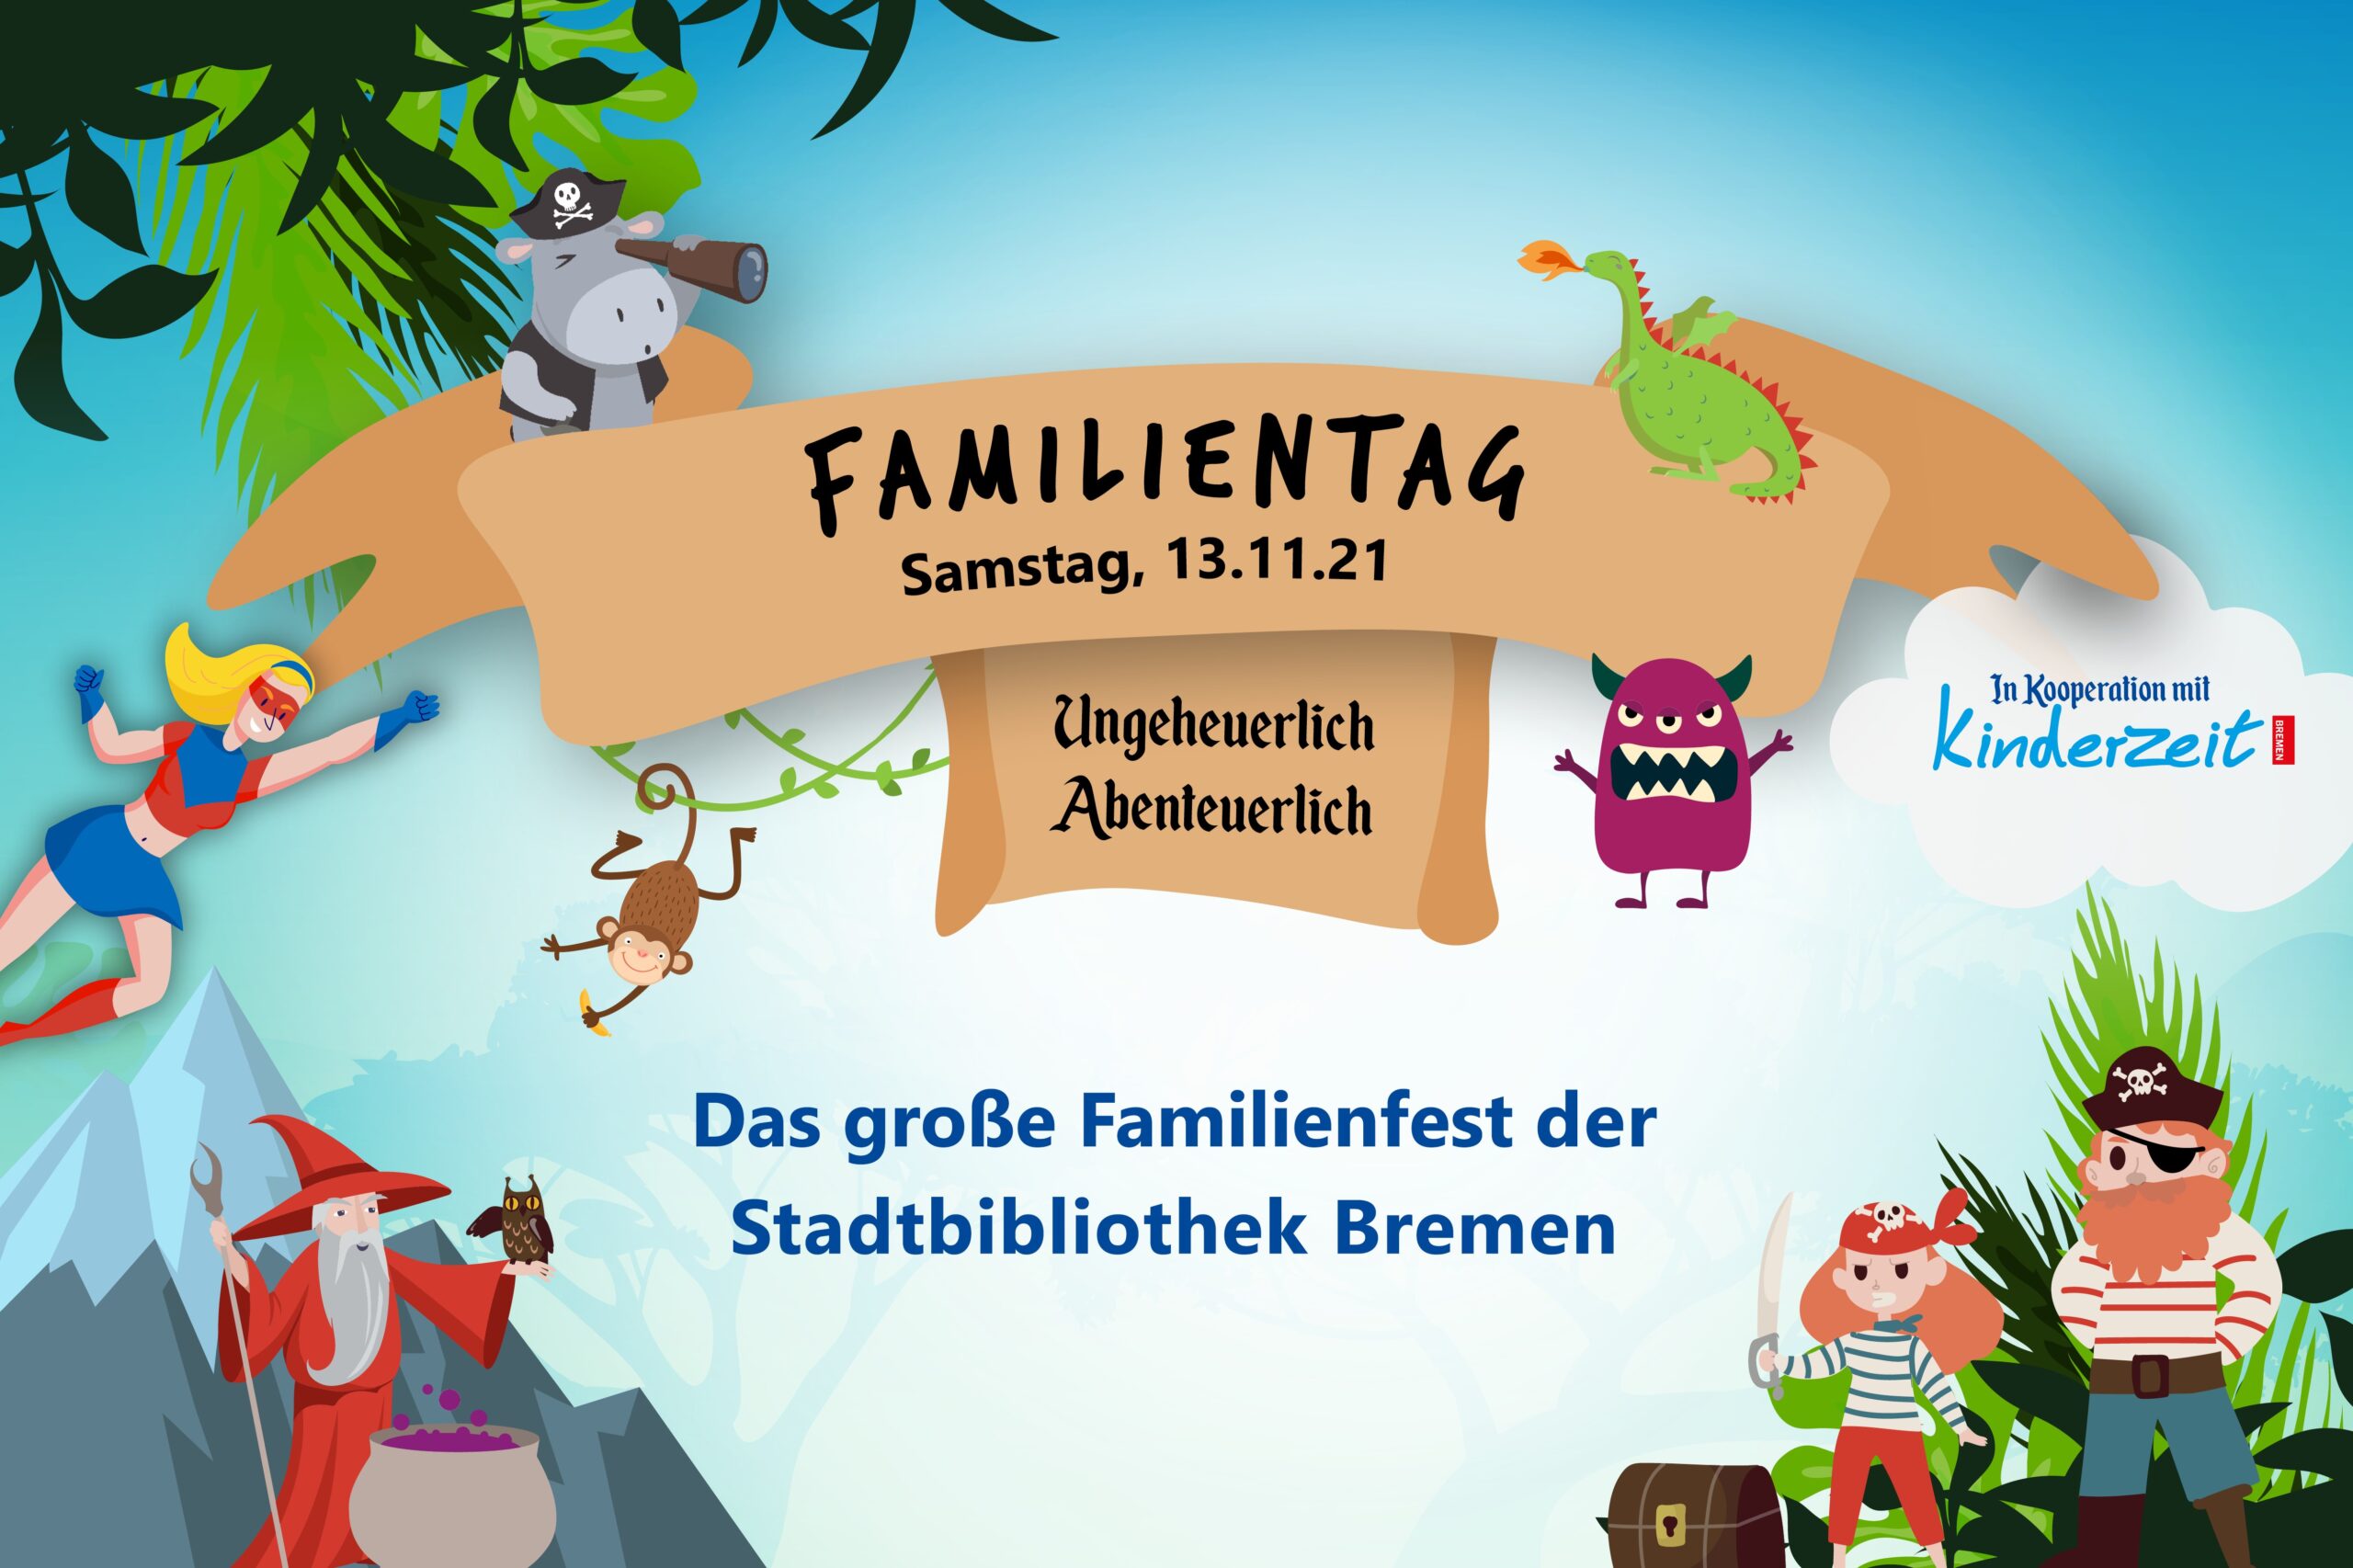 Auf dieser Bildkachel steht "Familientag am 13. November  - das große Familienfest der Stadtbibliothek Bremen.